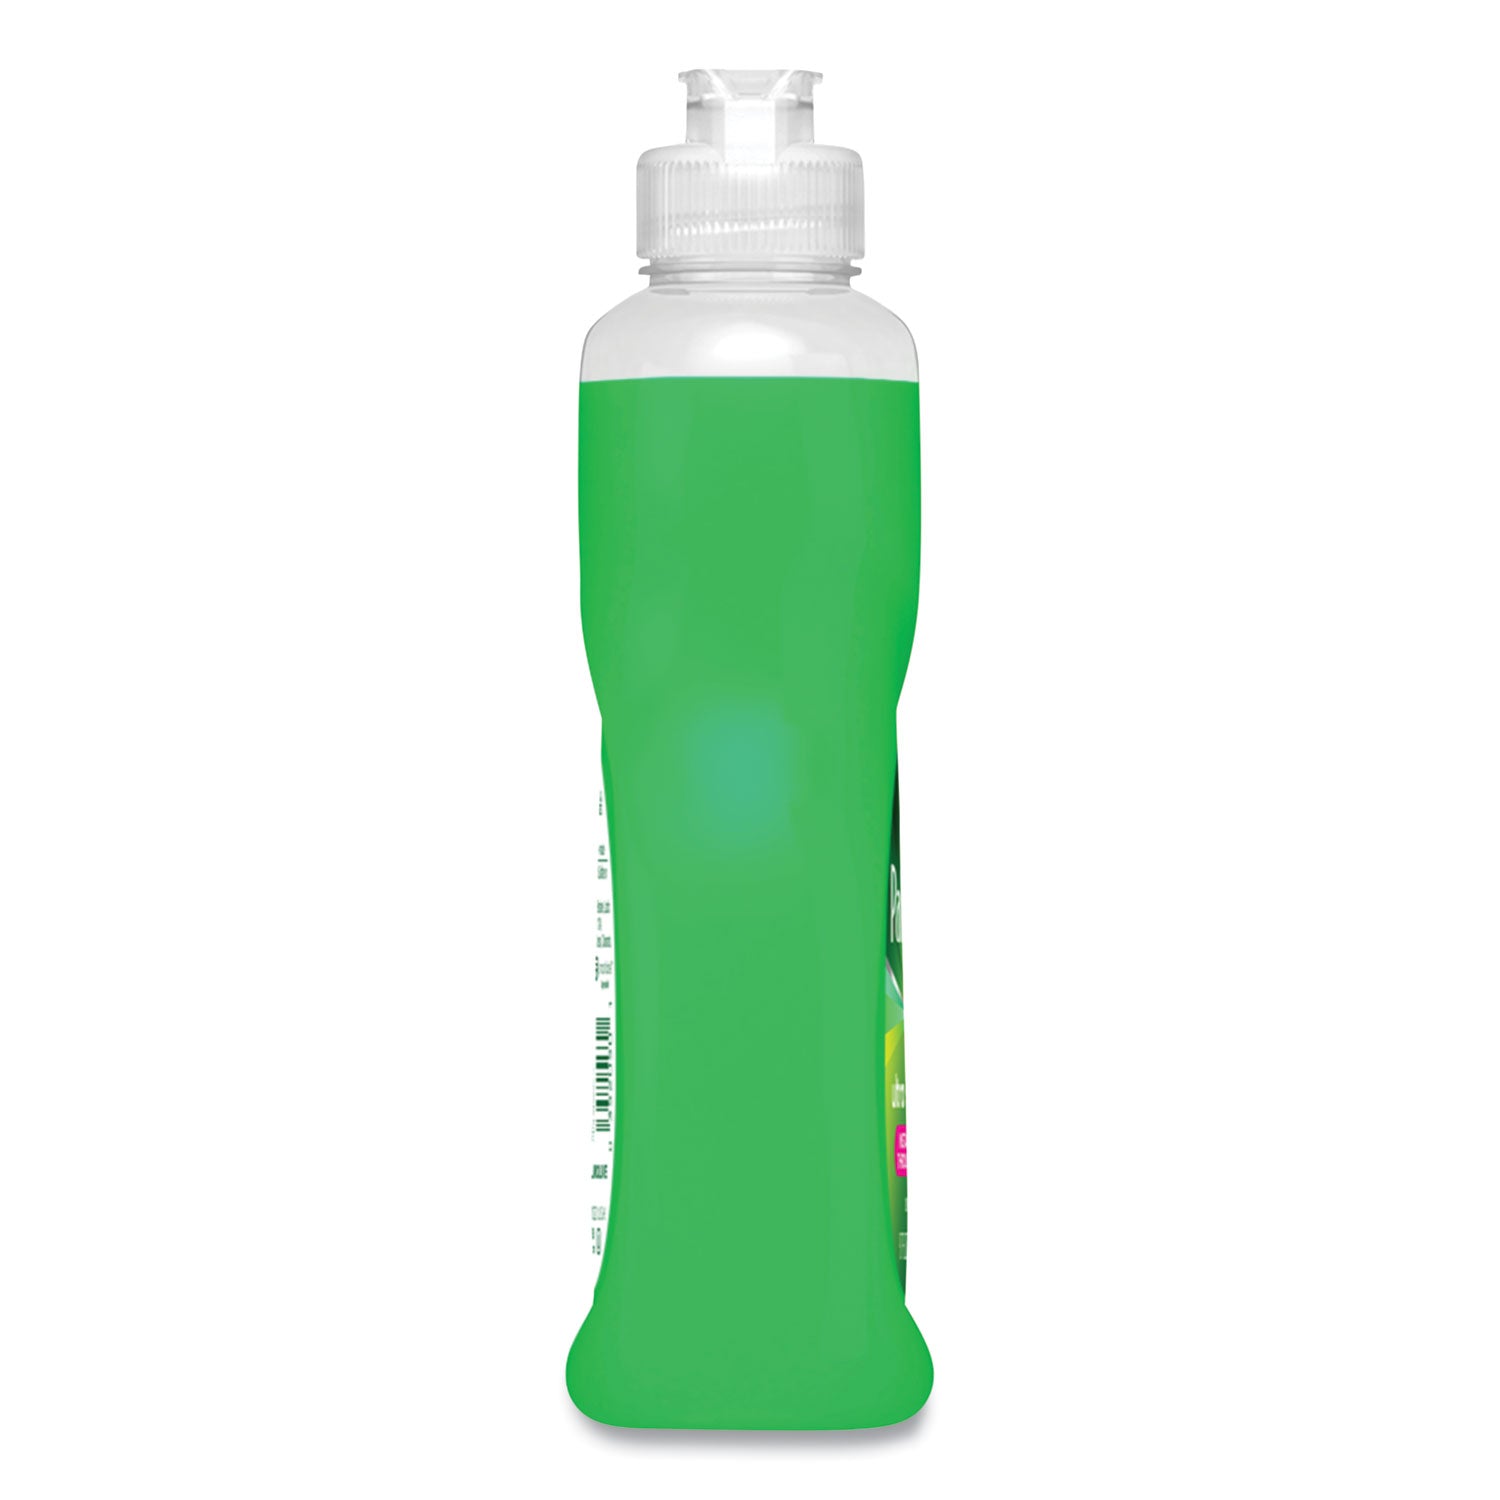 dishwashing-liquid-fresh-scent-97-oz-16-carton_cpc61032015 - 4